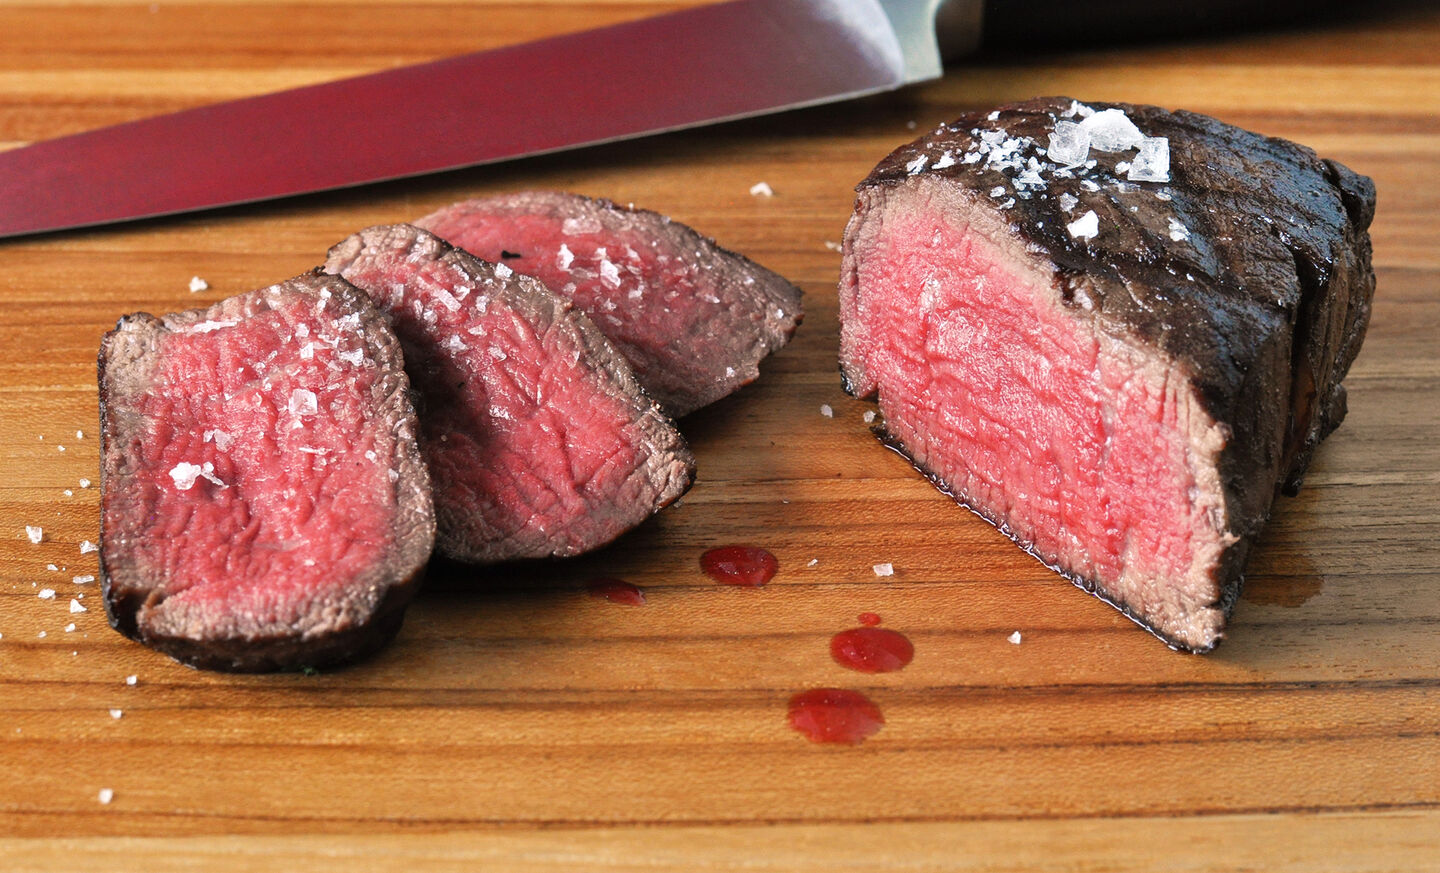 Grilled Wagyu Beef Filet Mignon Steak Recipe